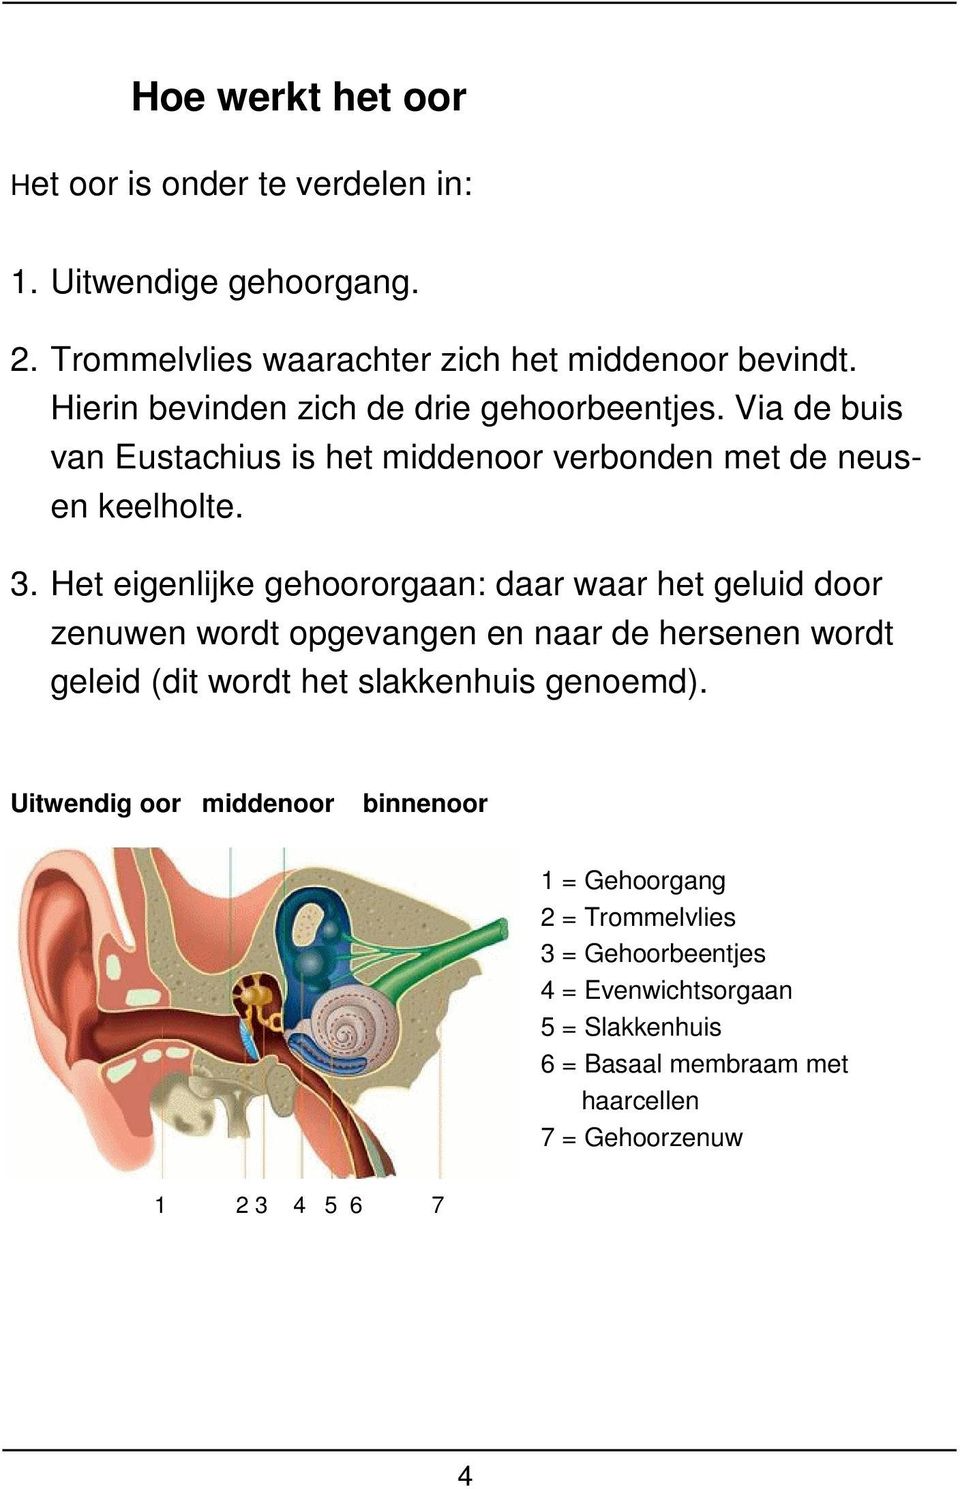 Het eigenlijke gehoororgaan: daar waar het geluid door zenuwen wordt opgevangen en naar de hersenen wordt geleid (dit wordt het slakkenhuis genoemd).